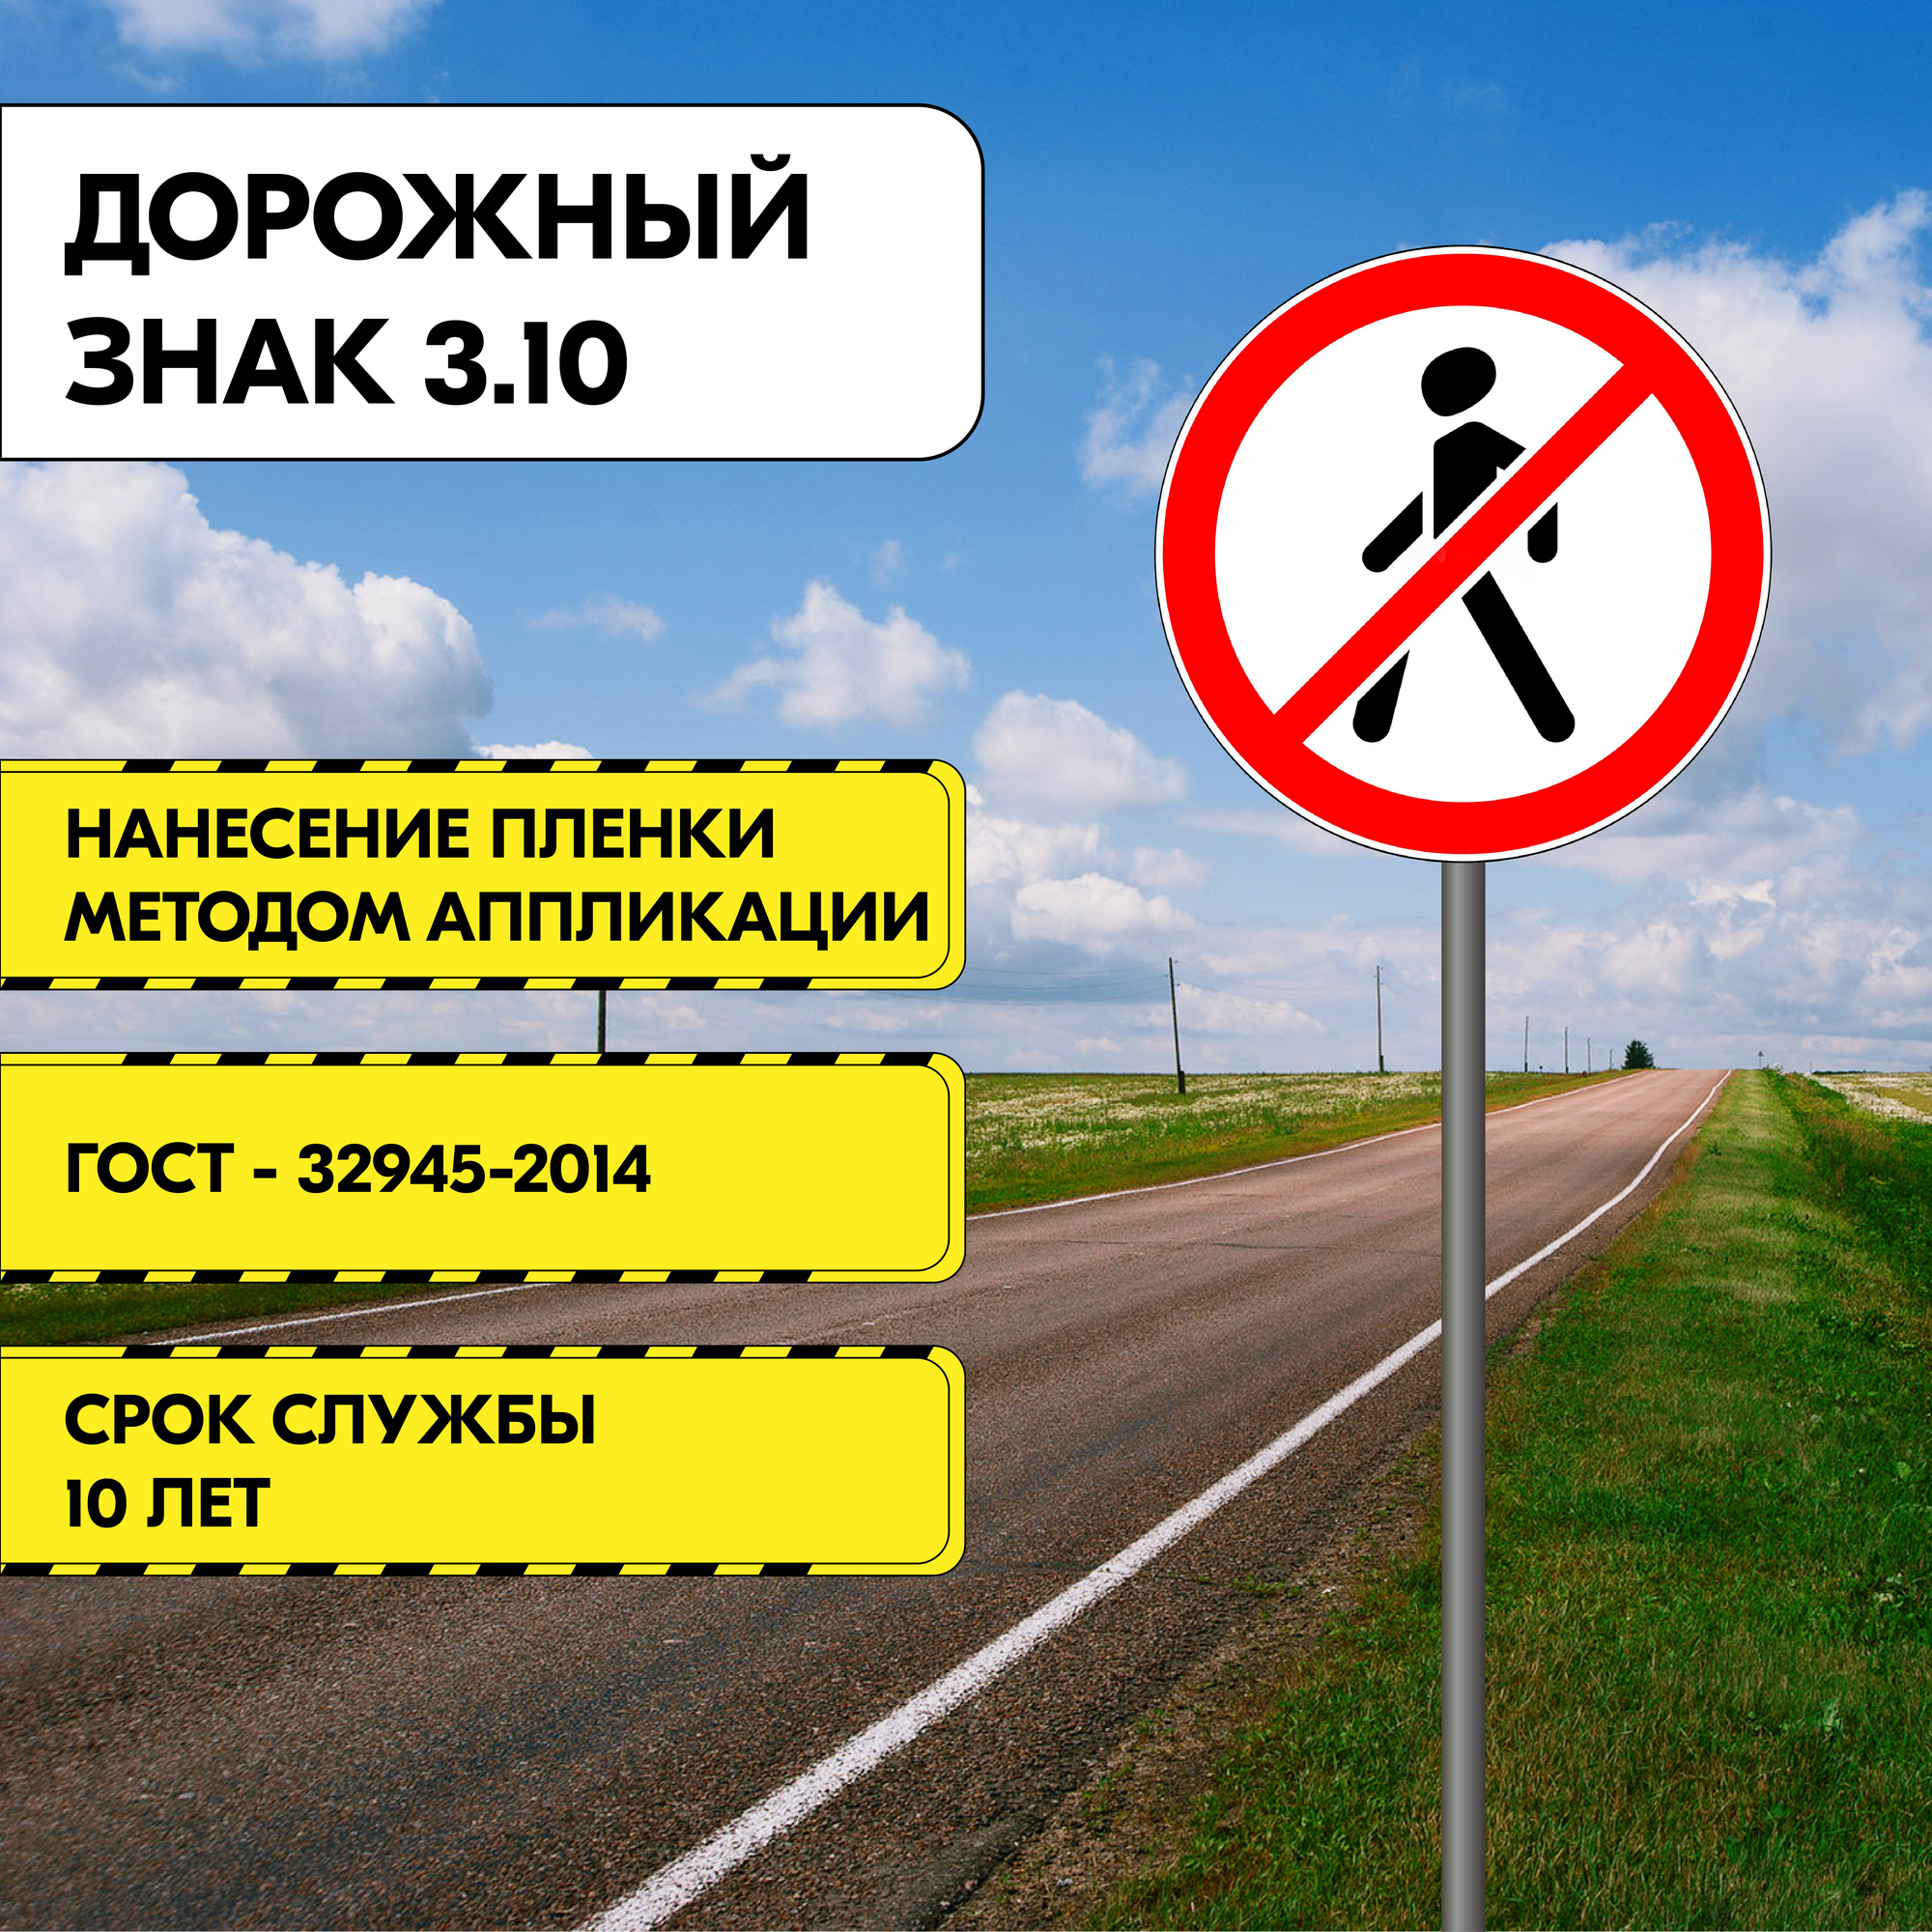 Дорожный знак "Движение пешеходов запрещено" 3.10, 500 мм, Типоразмер II Тип A, металлический